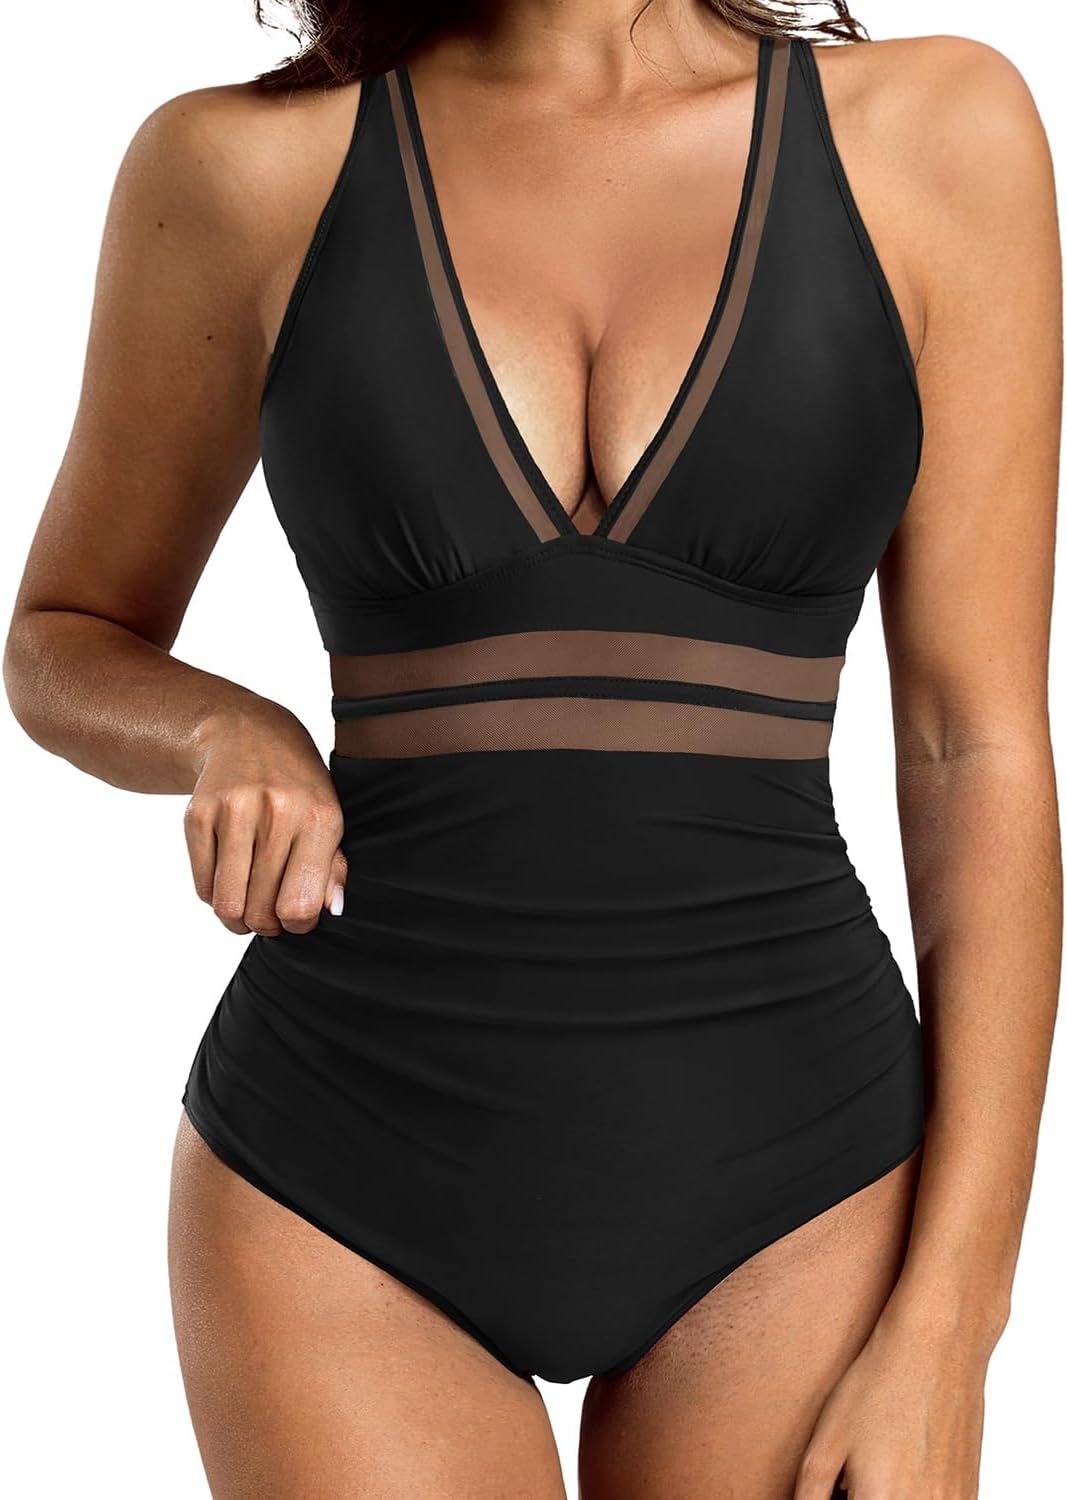 Holipick Women Tummy Control One Piece Swimsuit Sexy V Neck Mesh Bathing Suit Slimming Push Up Sw... | Amazon (US)